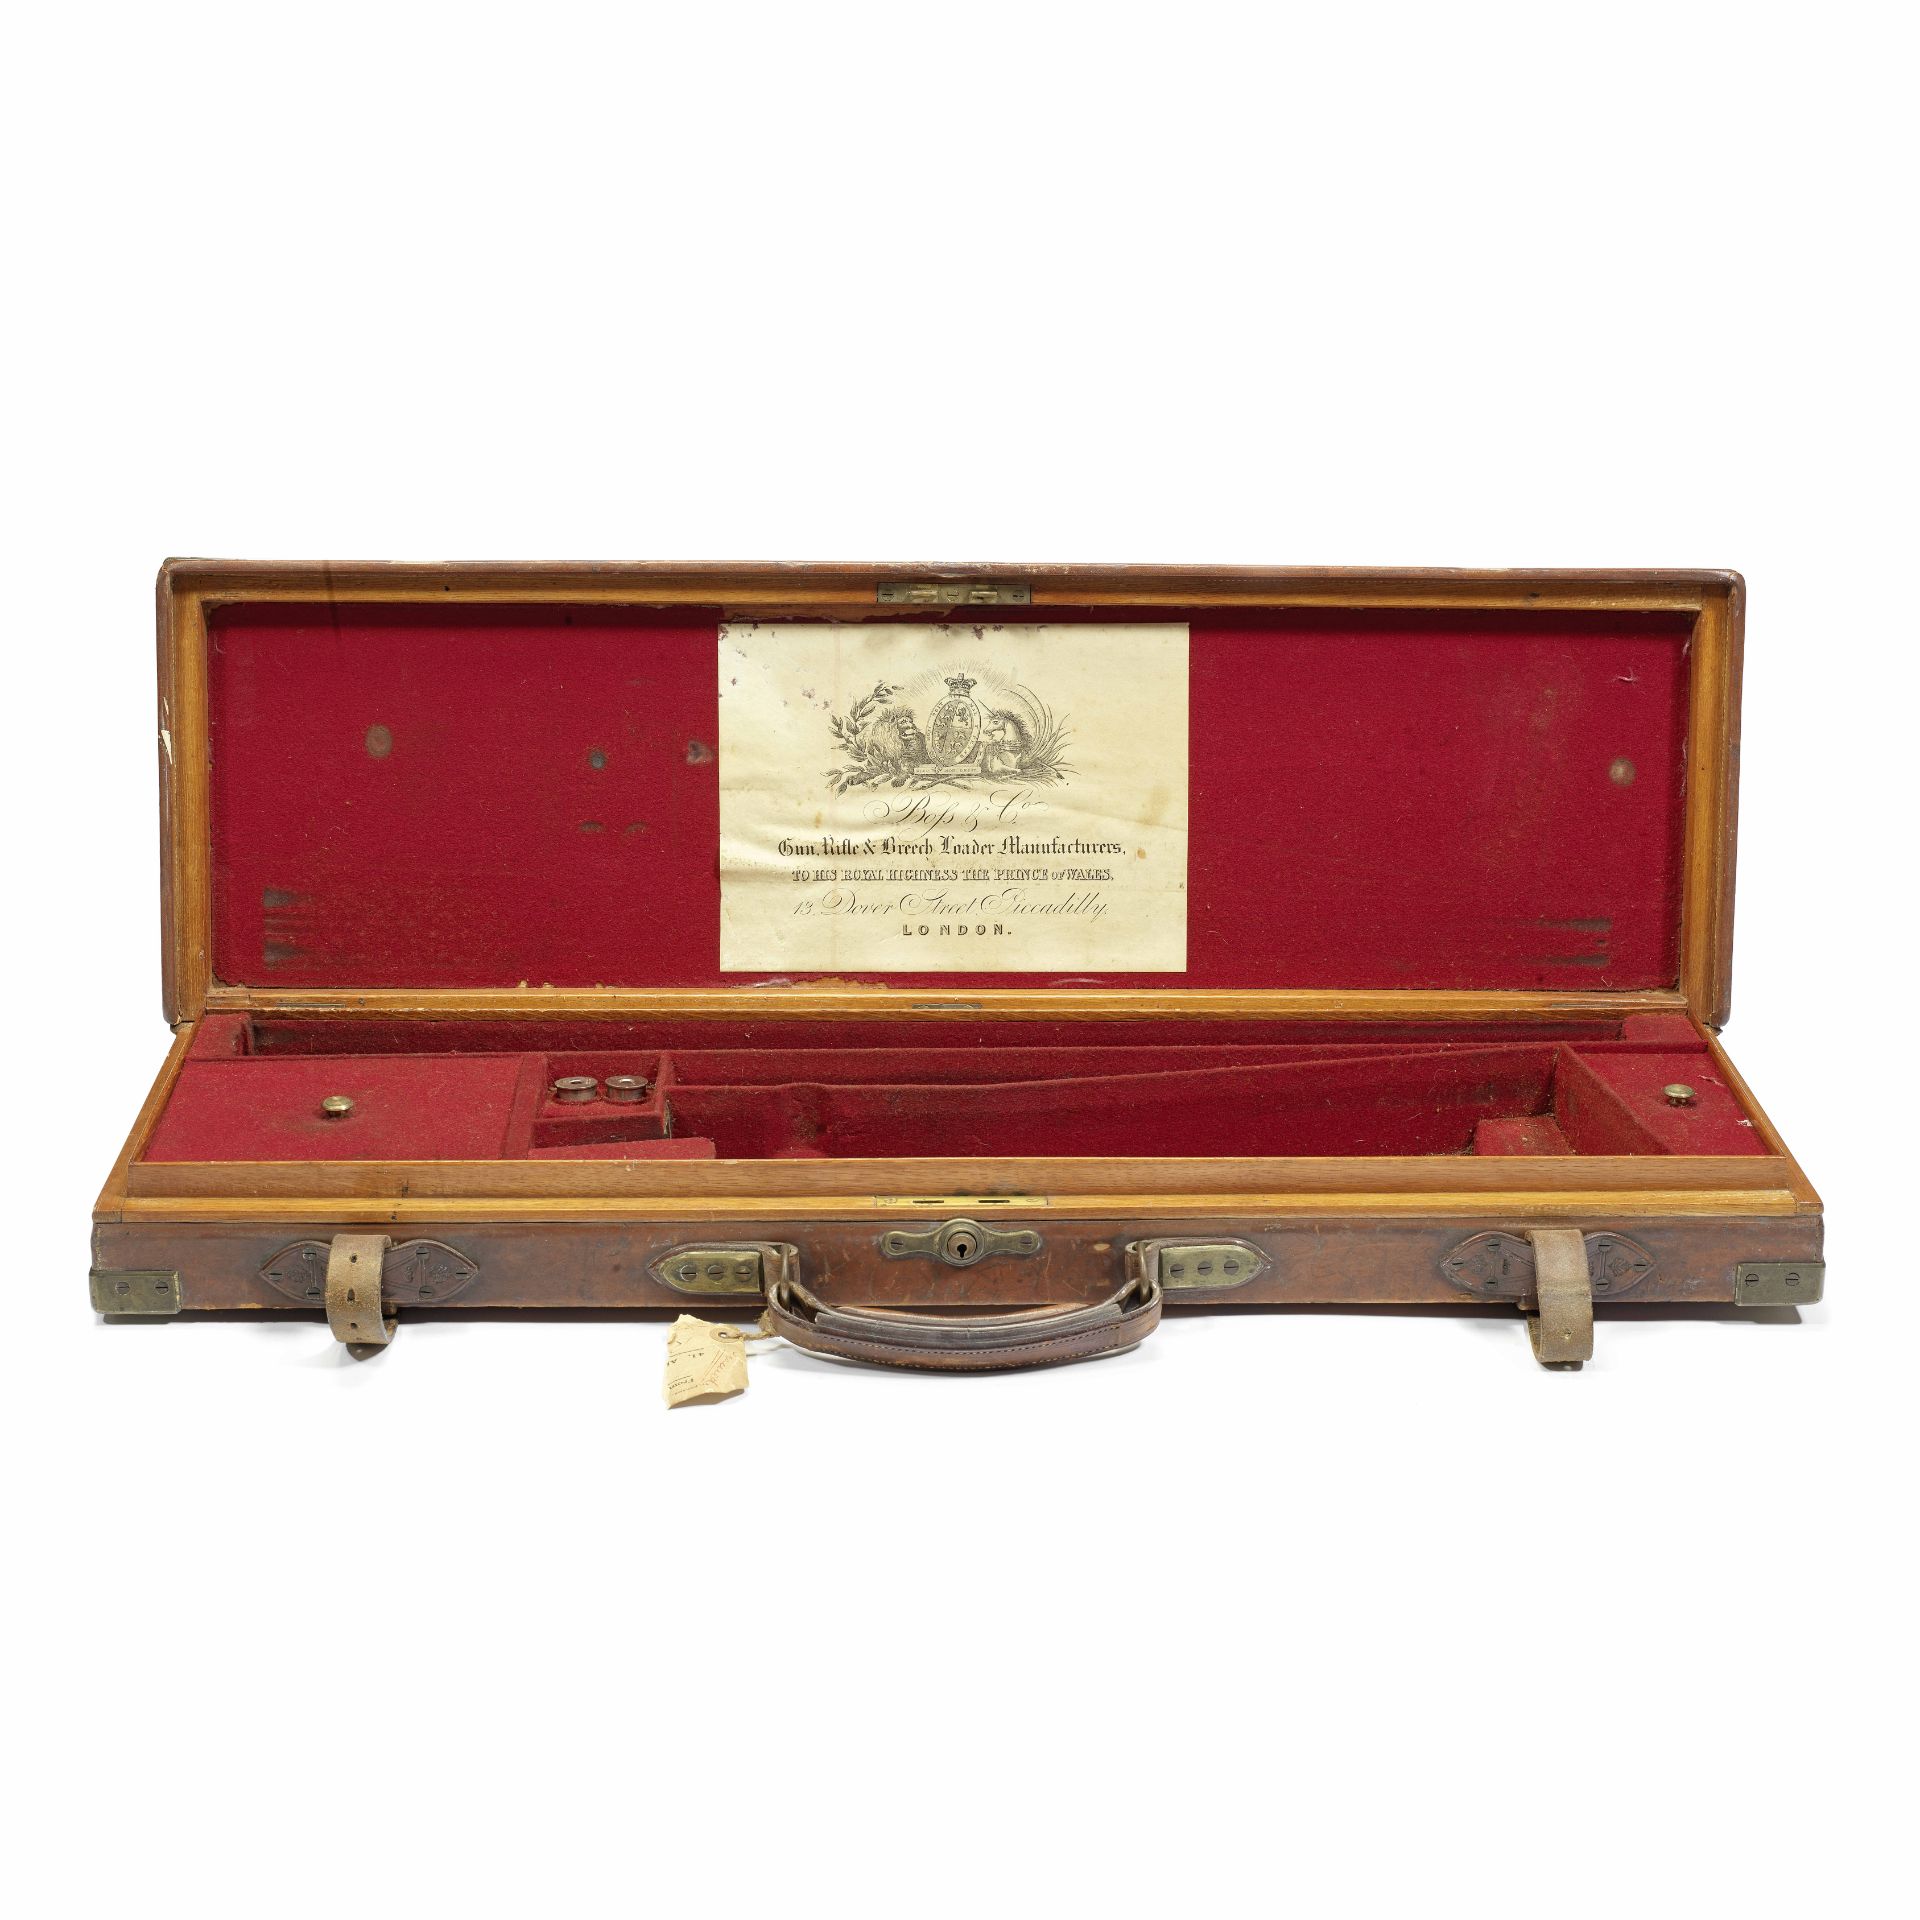 A fine brass-mounted oak and leather single guncase by Boss & Co.